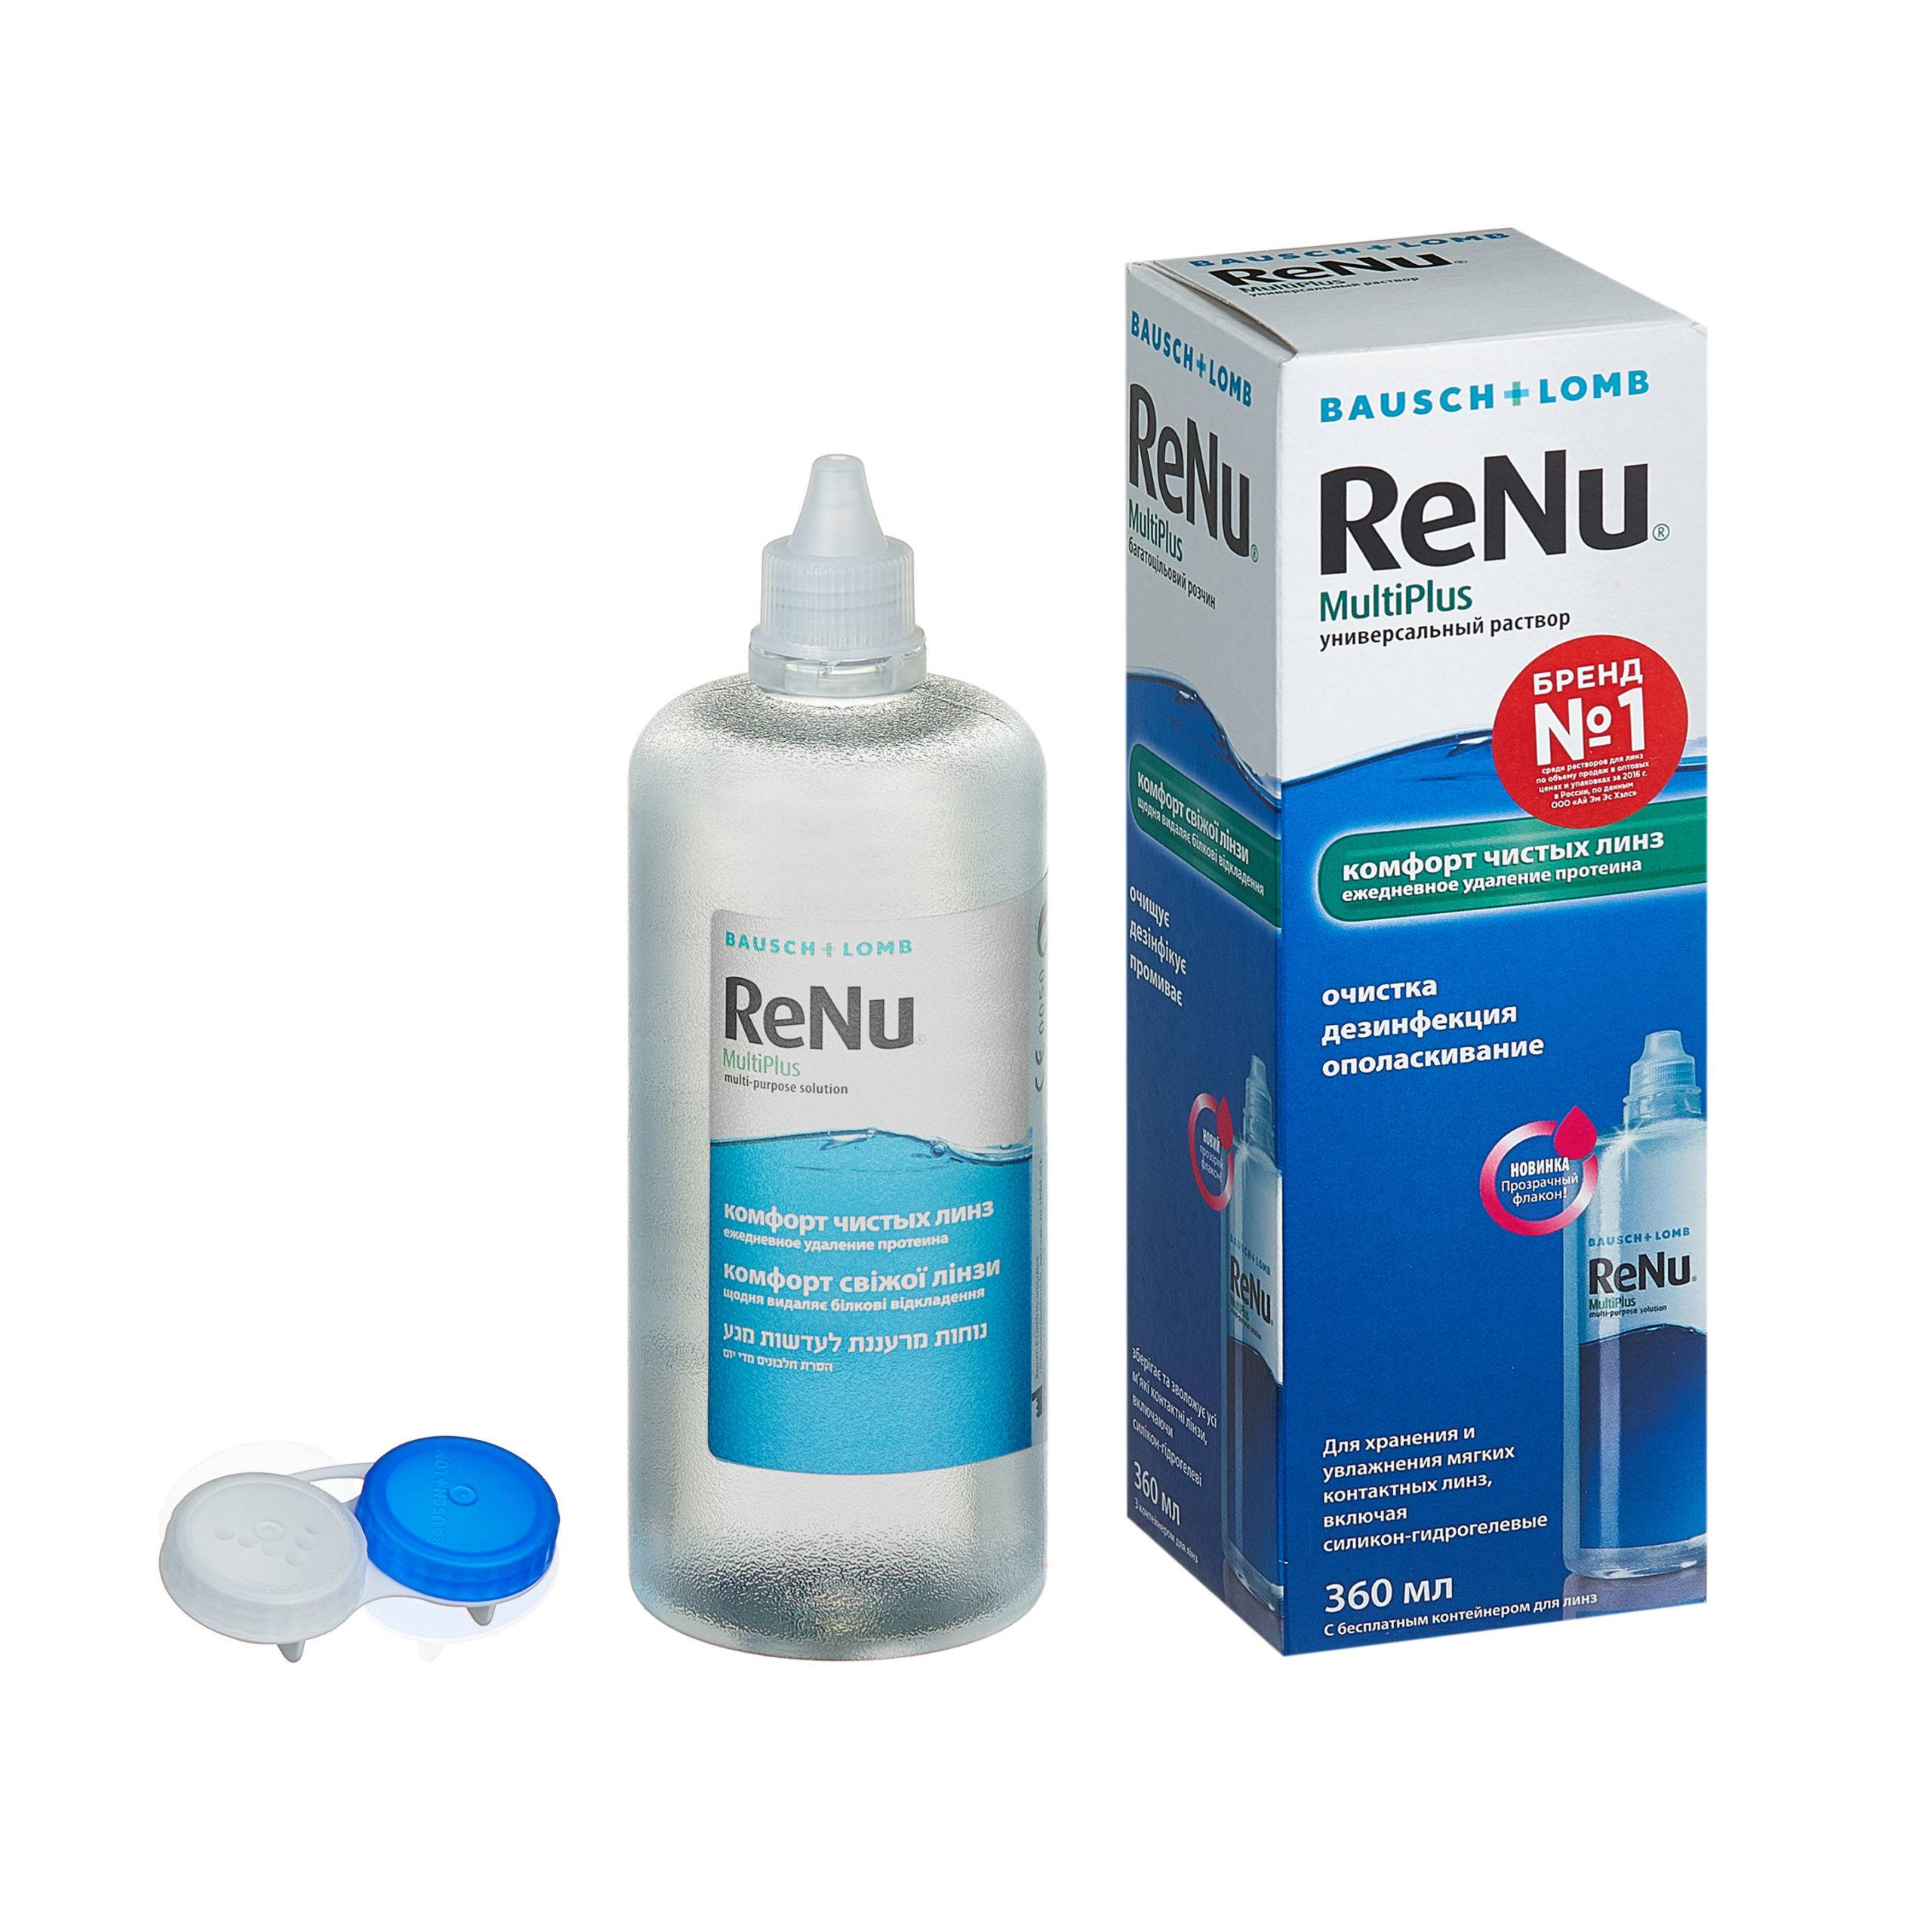 Комфортное ношение контактной оптики: особенности применения renu – раствора для линз